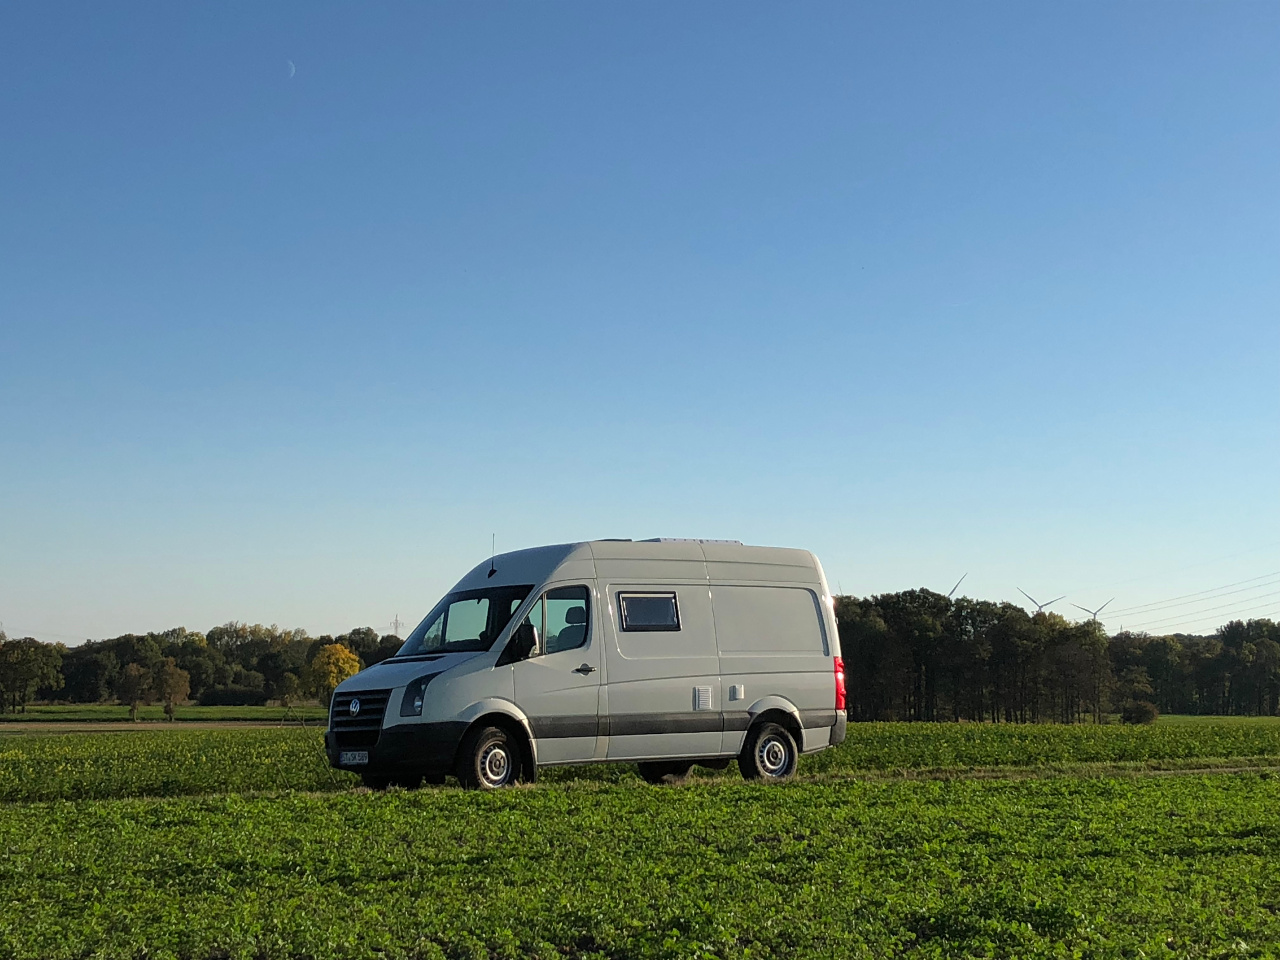 VW Crafter Umbau: Vom Transporter zum Campervan in nur 4 Monaten